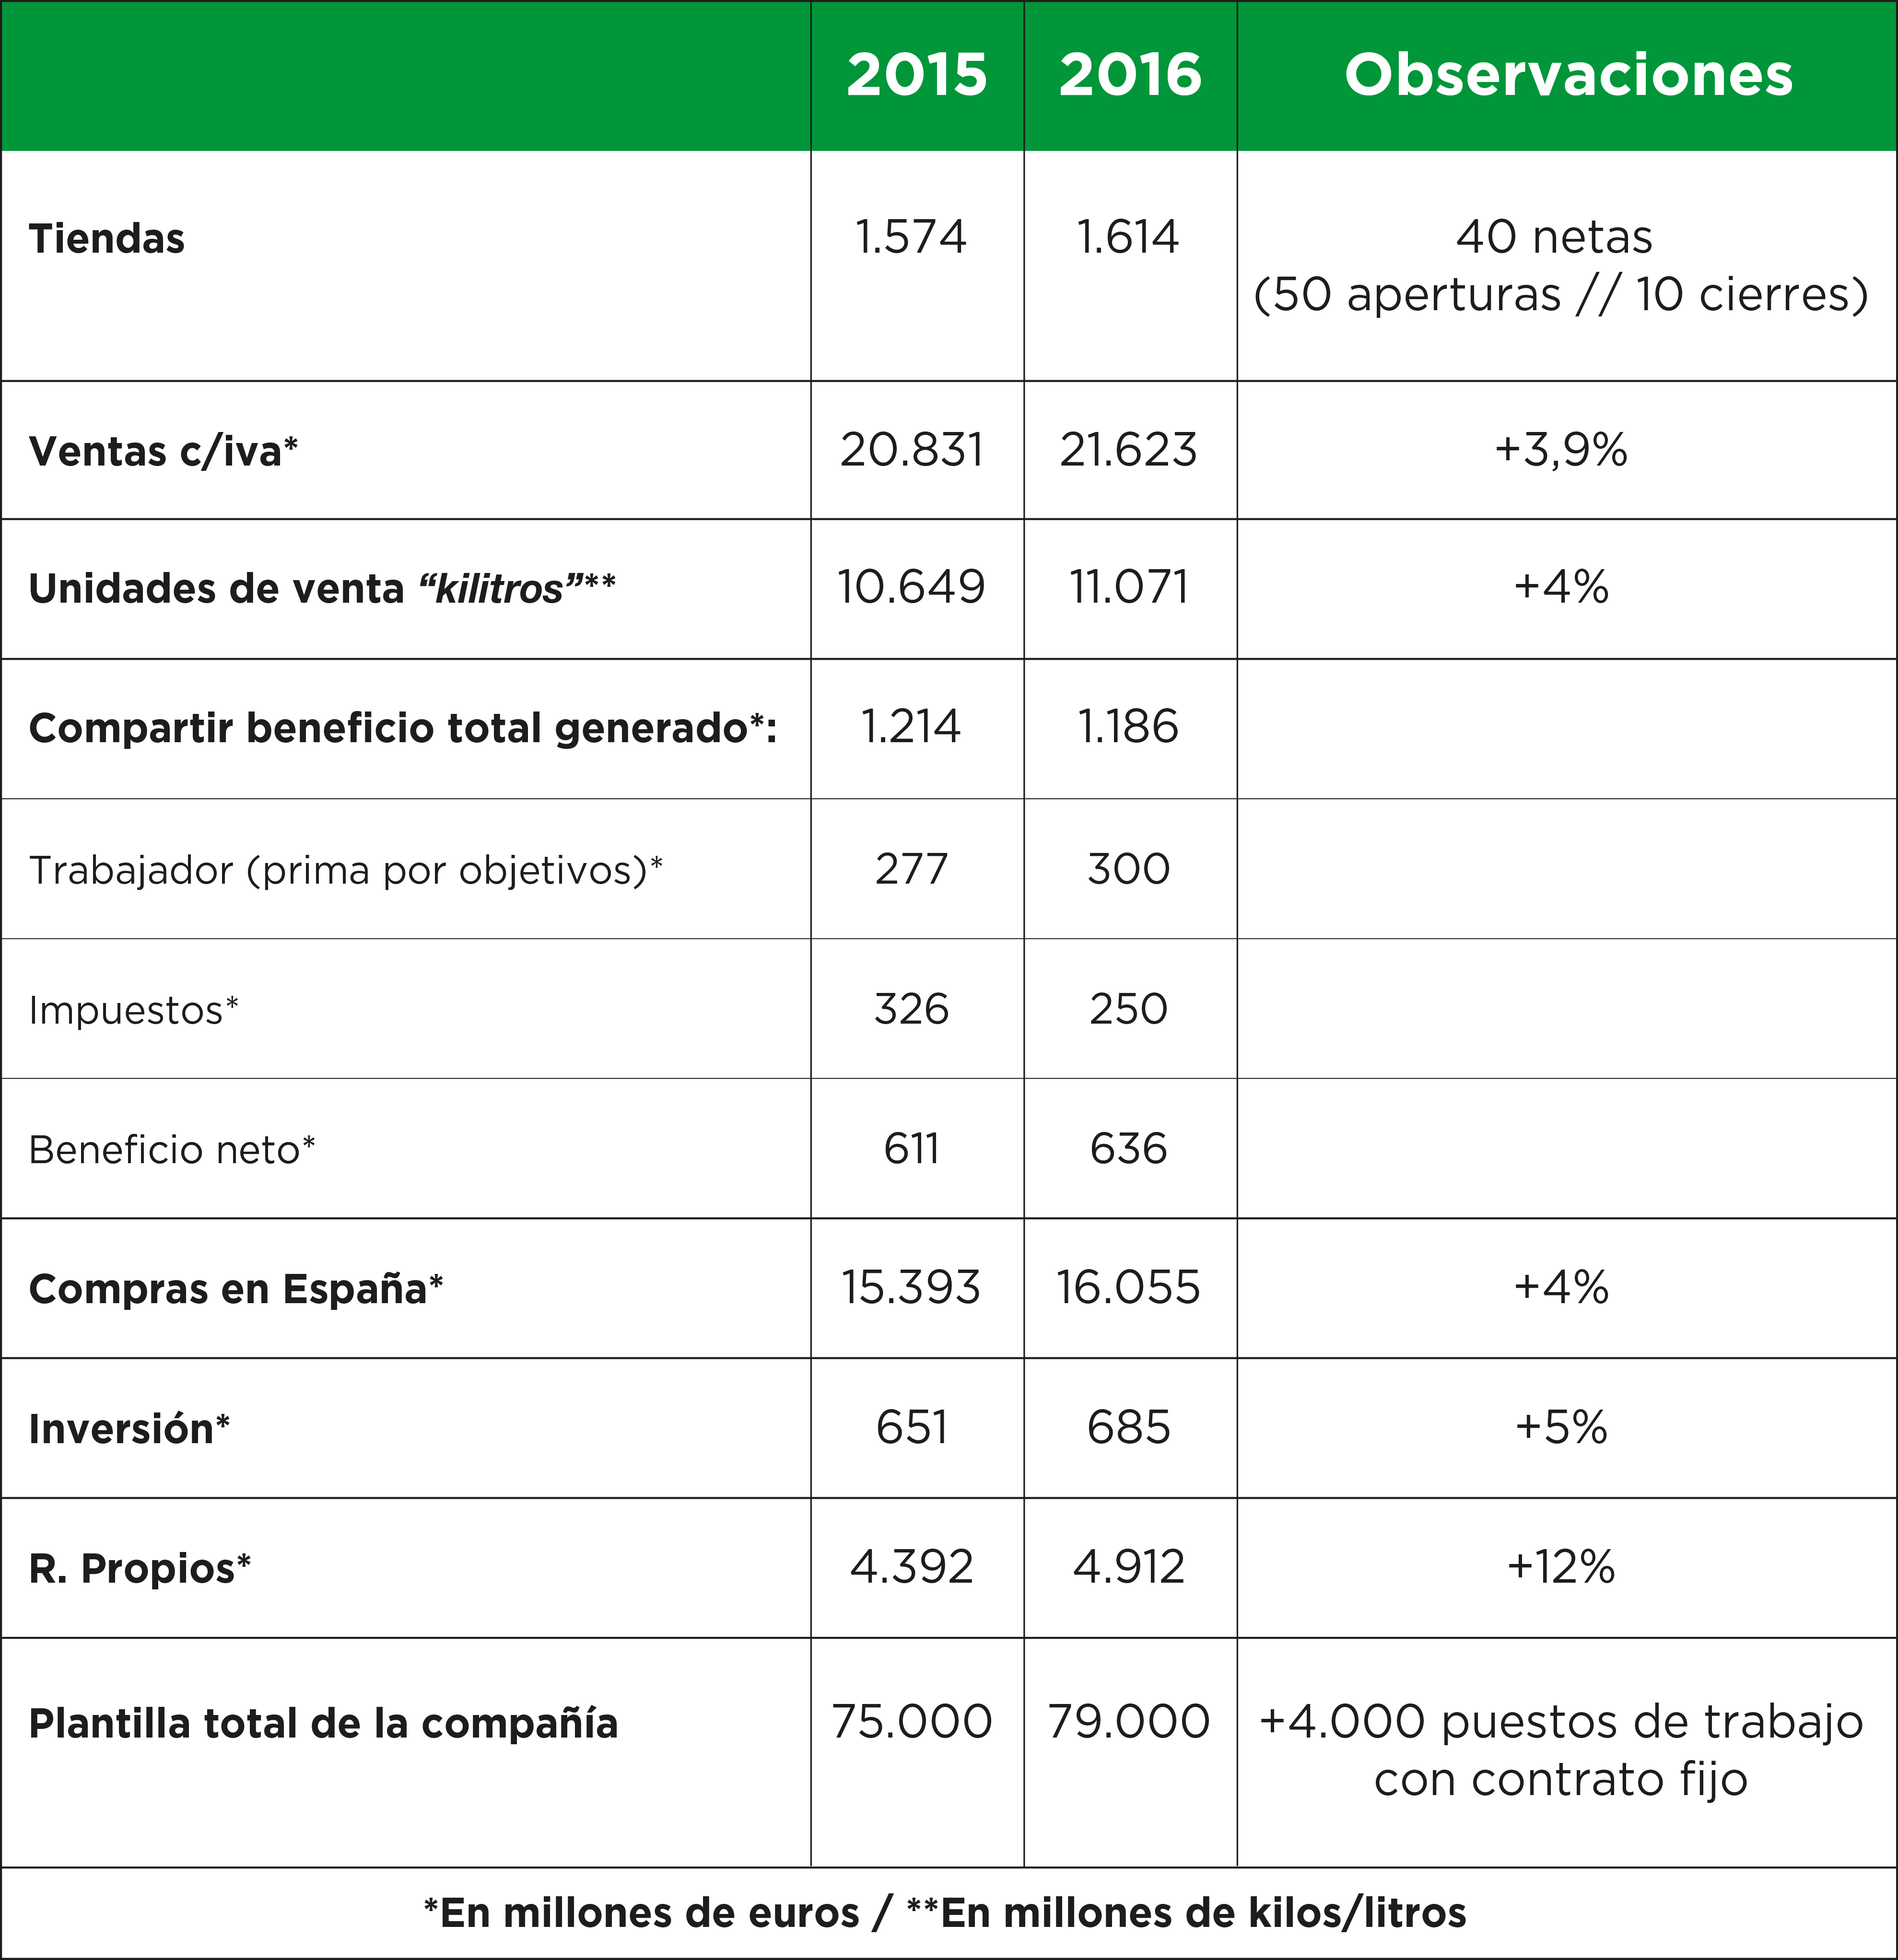 MERCADONA: ALGUNOS HECHOS RELEVANTES EN 2016